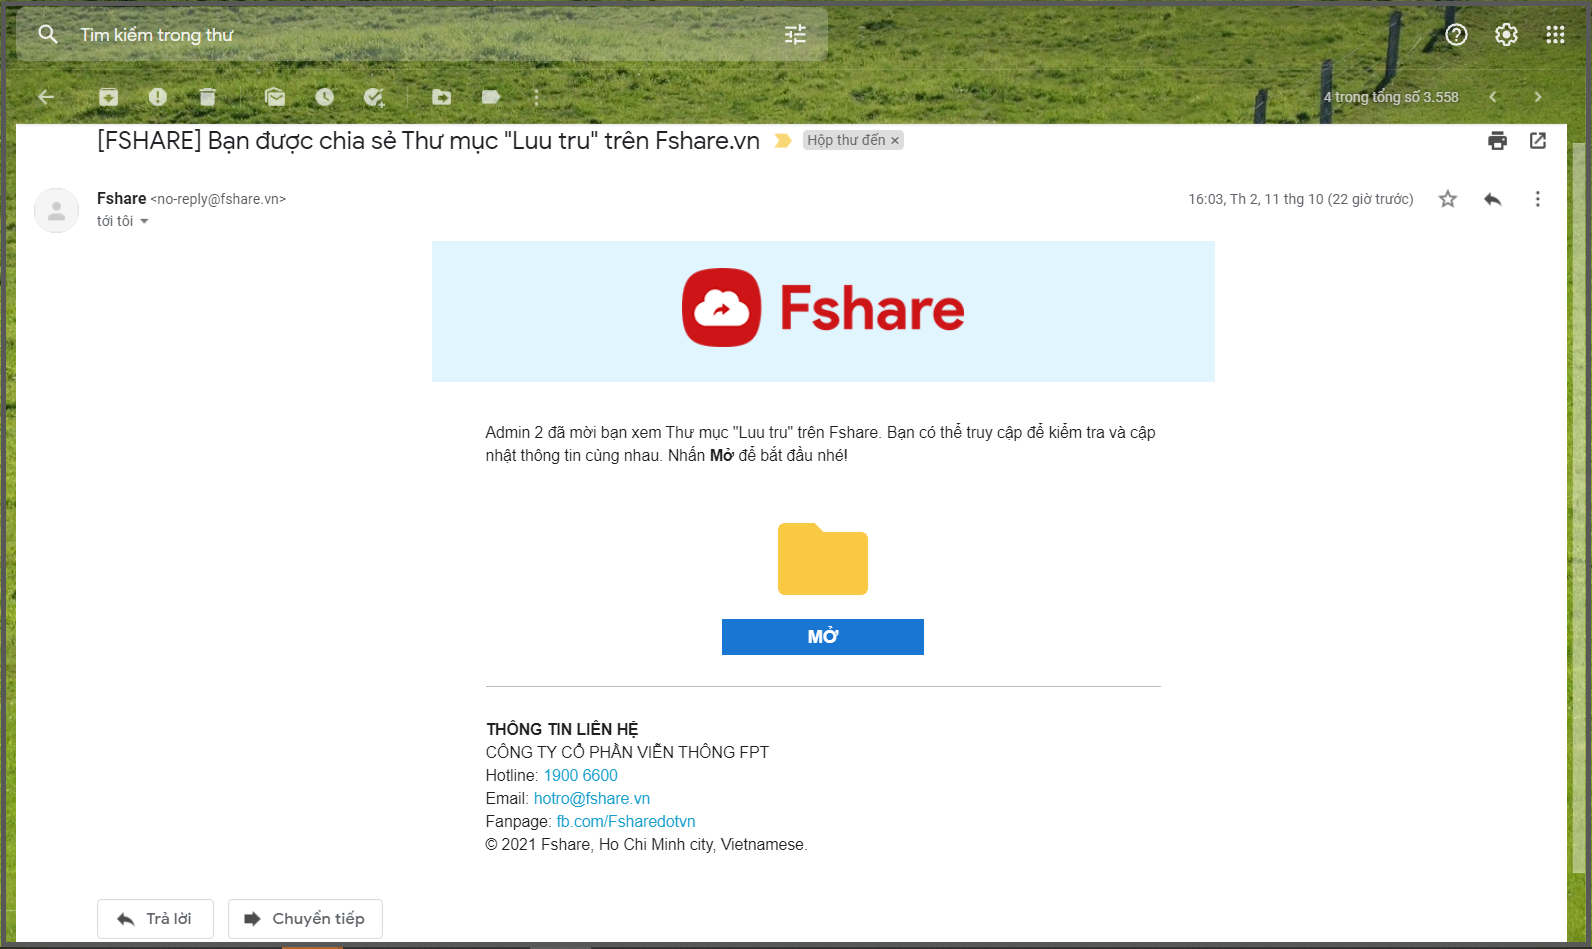 Thông báo chia sẻ riêng tư tài liệu trên Fshare